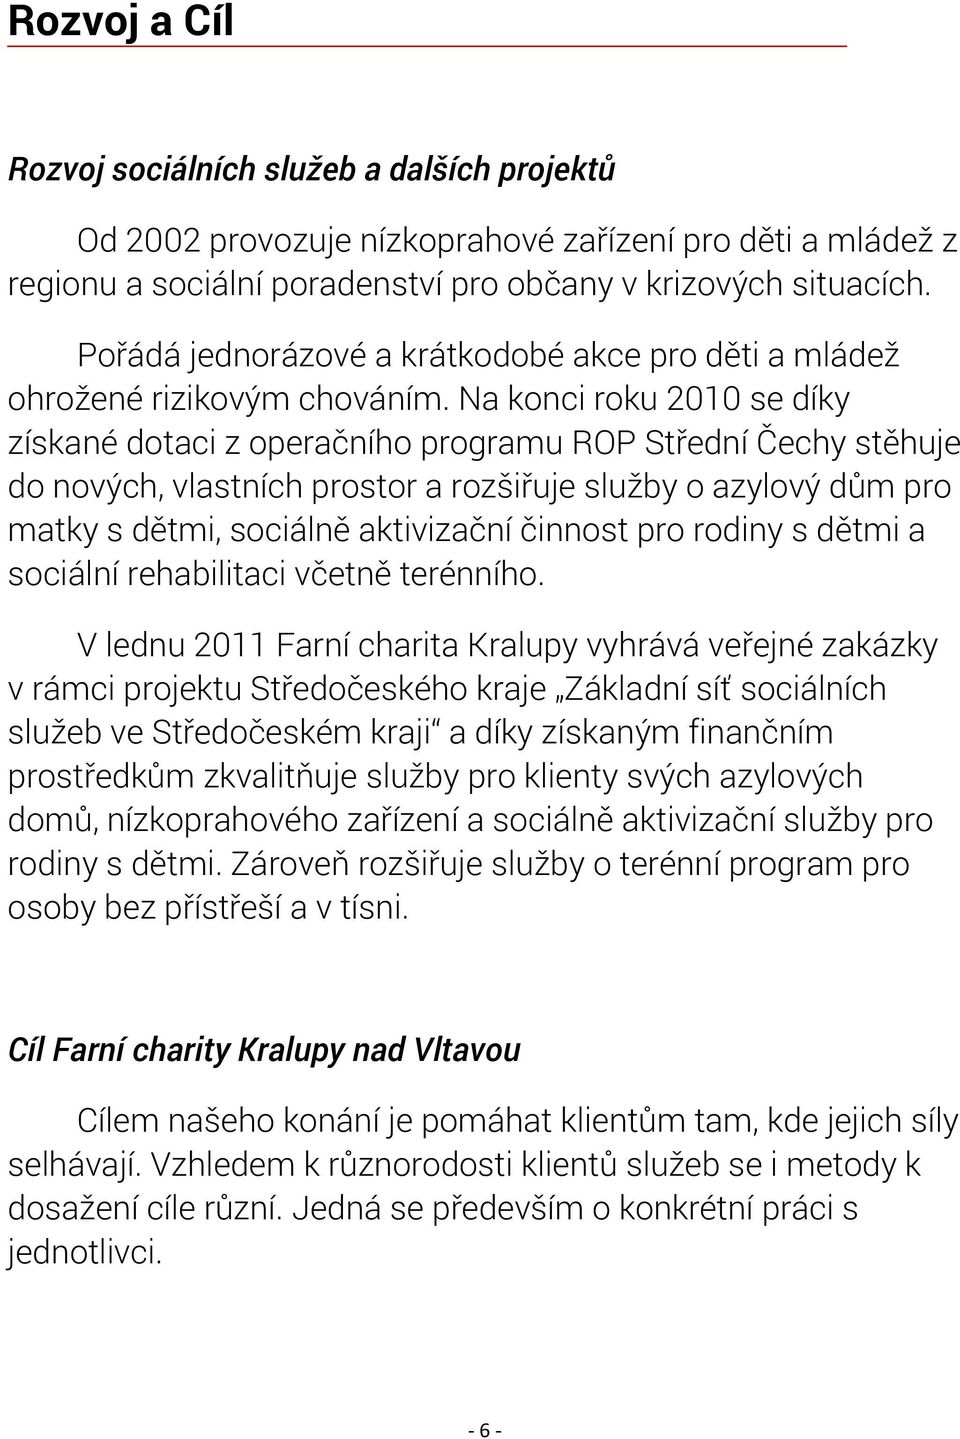 Na konci roku 2010 se díky získané dotaci z operačního programu ROP Střední Čechy stěhuje do nových, vlastních prostor a rozšiřuje služby o azylový dům pro matky s dětmi, sociálně aktivizační činnost